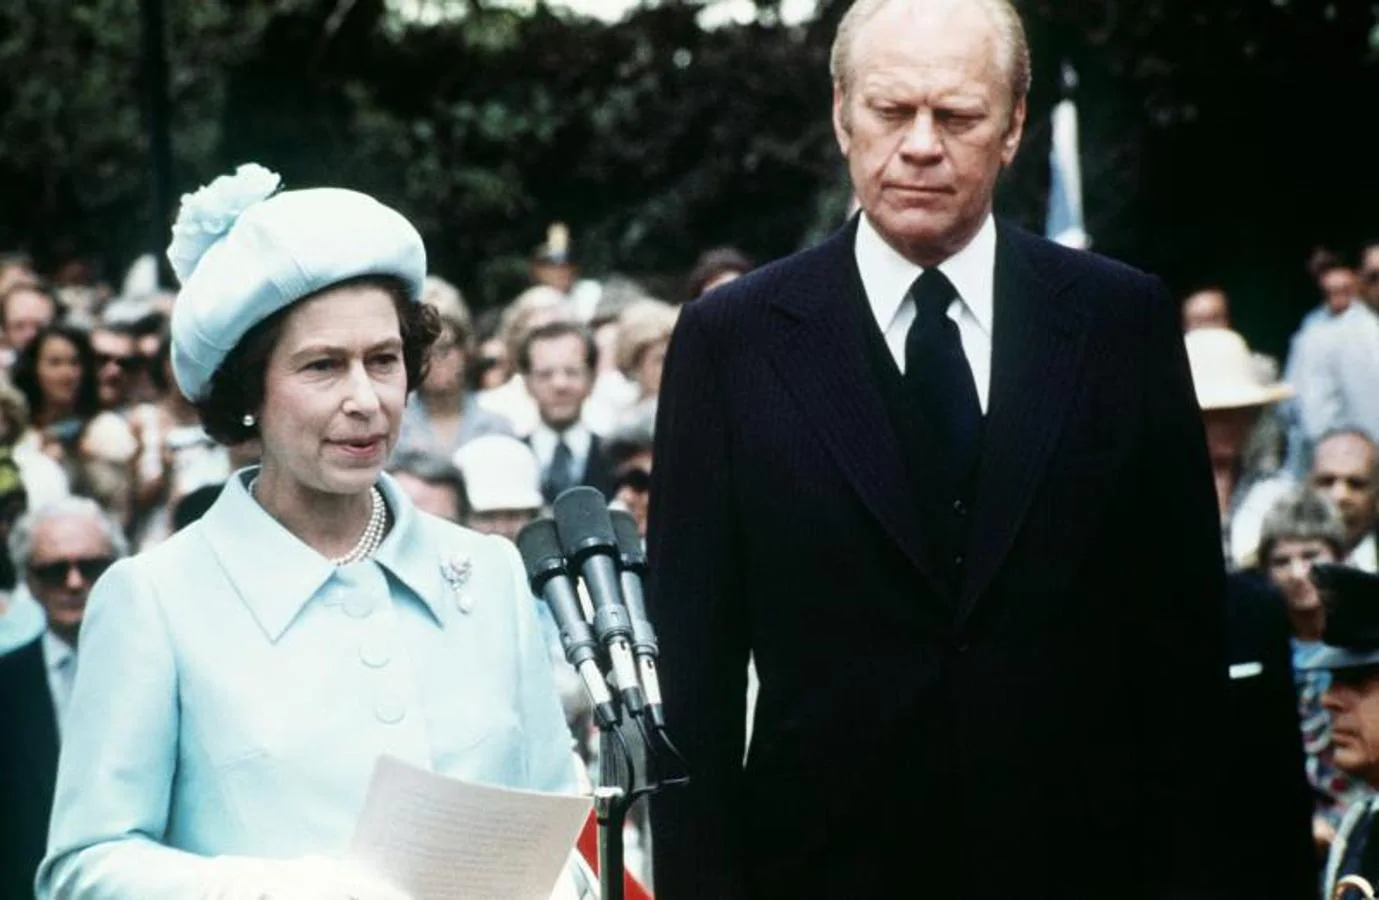 Los presidentes de la Reina. Fotografía hecha en 1976, durante la visita de la Isabel II a la Casa Blanca, ocupada en ese momento por Gerald R. Ford, quien asumió el control de la Casa Blanca después de la designación de Richard Nixon tras el escándalo de Watergate.